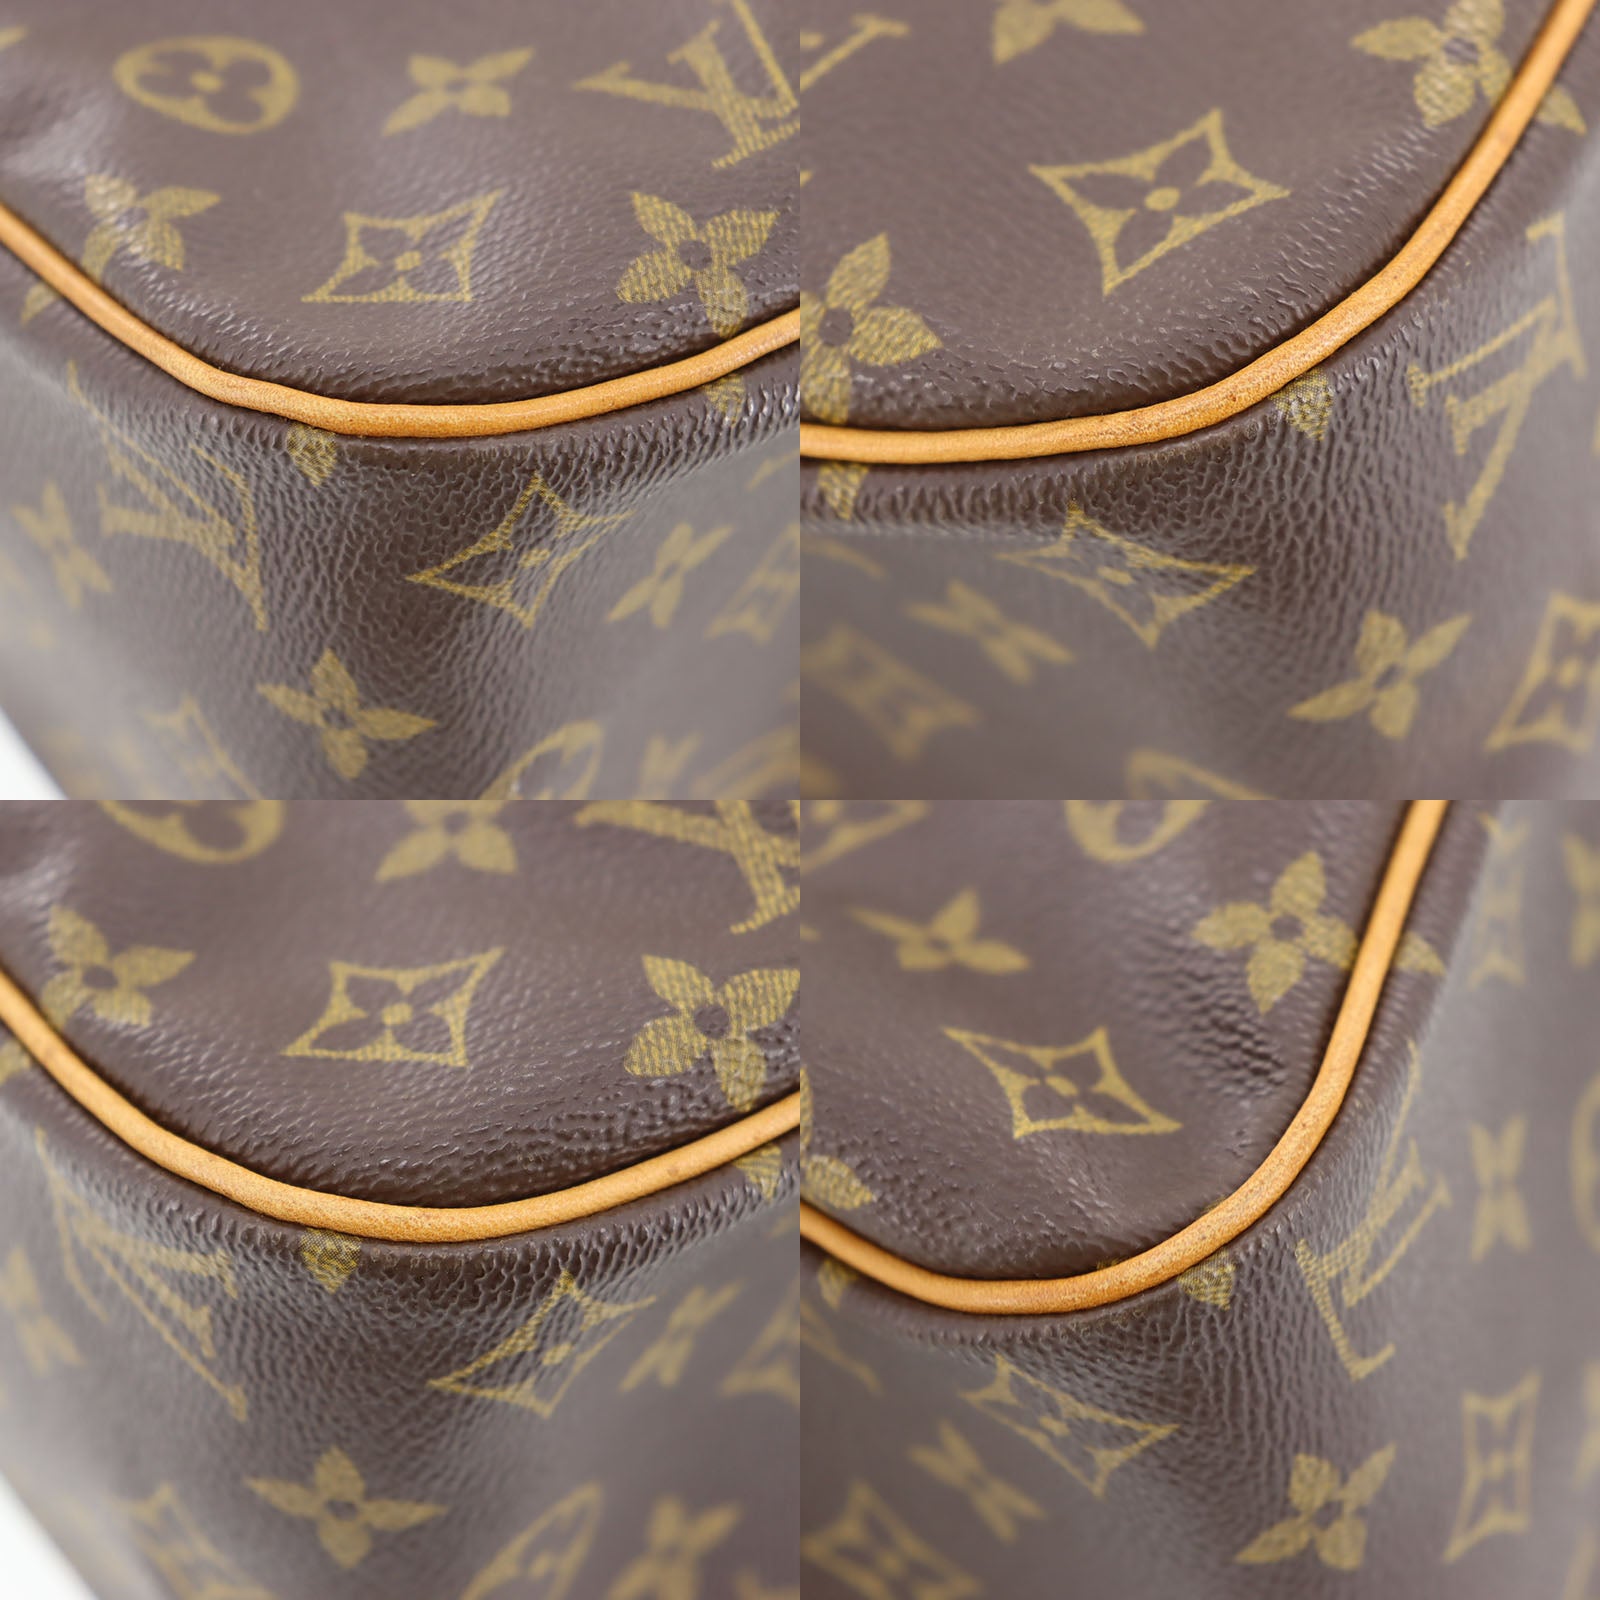 Handbag Louis Vuitton Cite GM M51181 Monogram 123010057